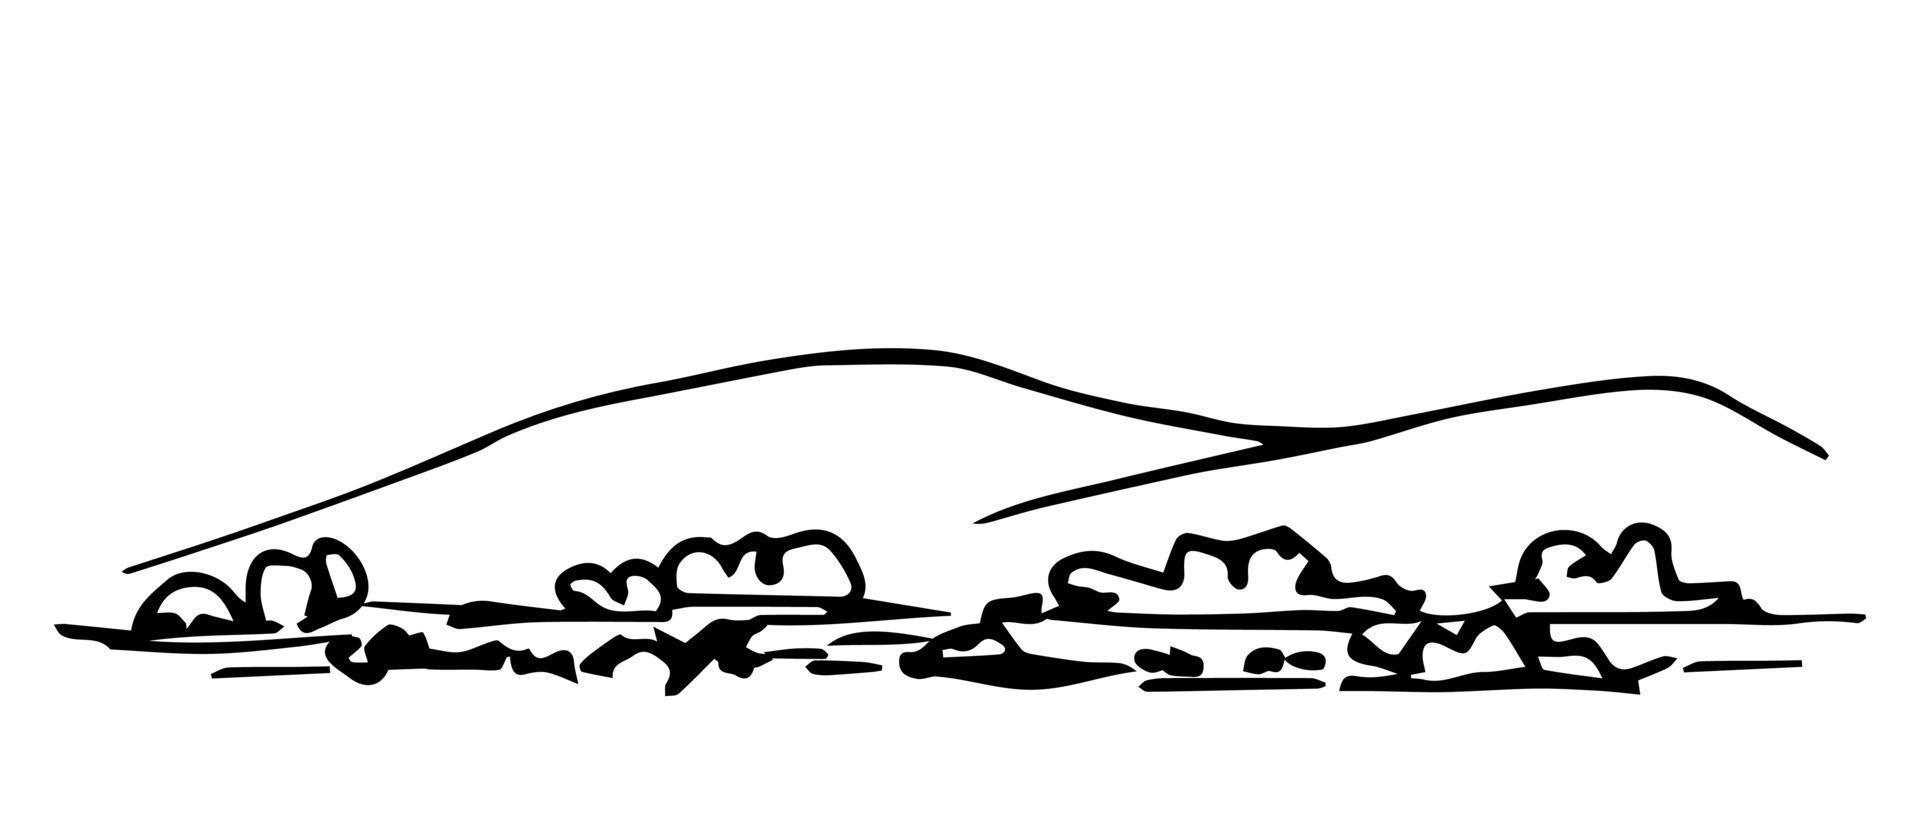 semplice schizzo vettoriale di contorno nero disegnato a mano. natura, paesaggio. colline, montagne all'orizzonte, pietre, cespuglio, erba in primo piano.